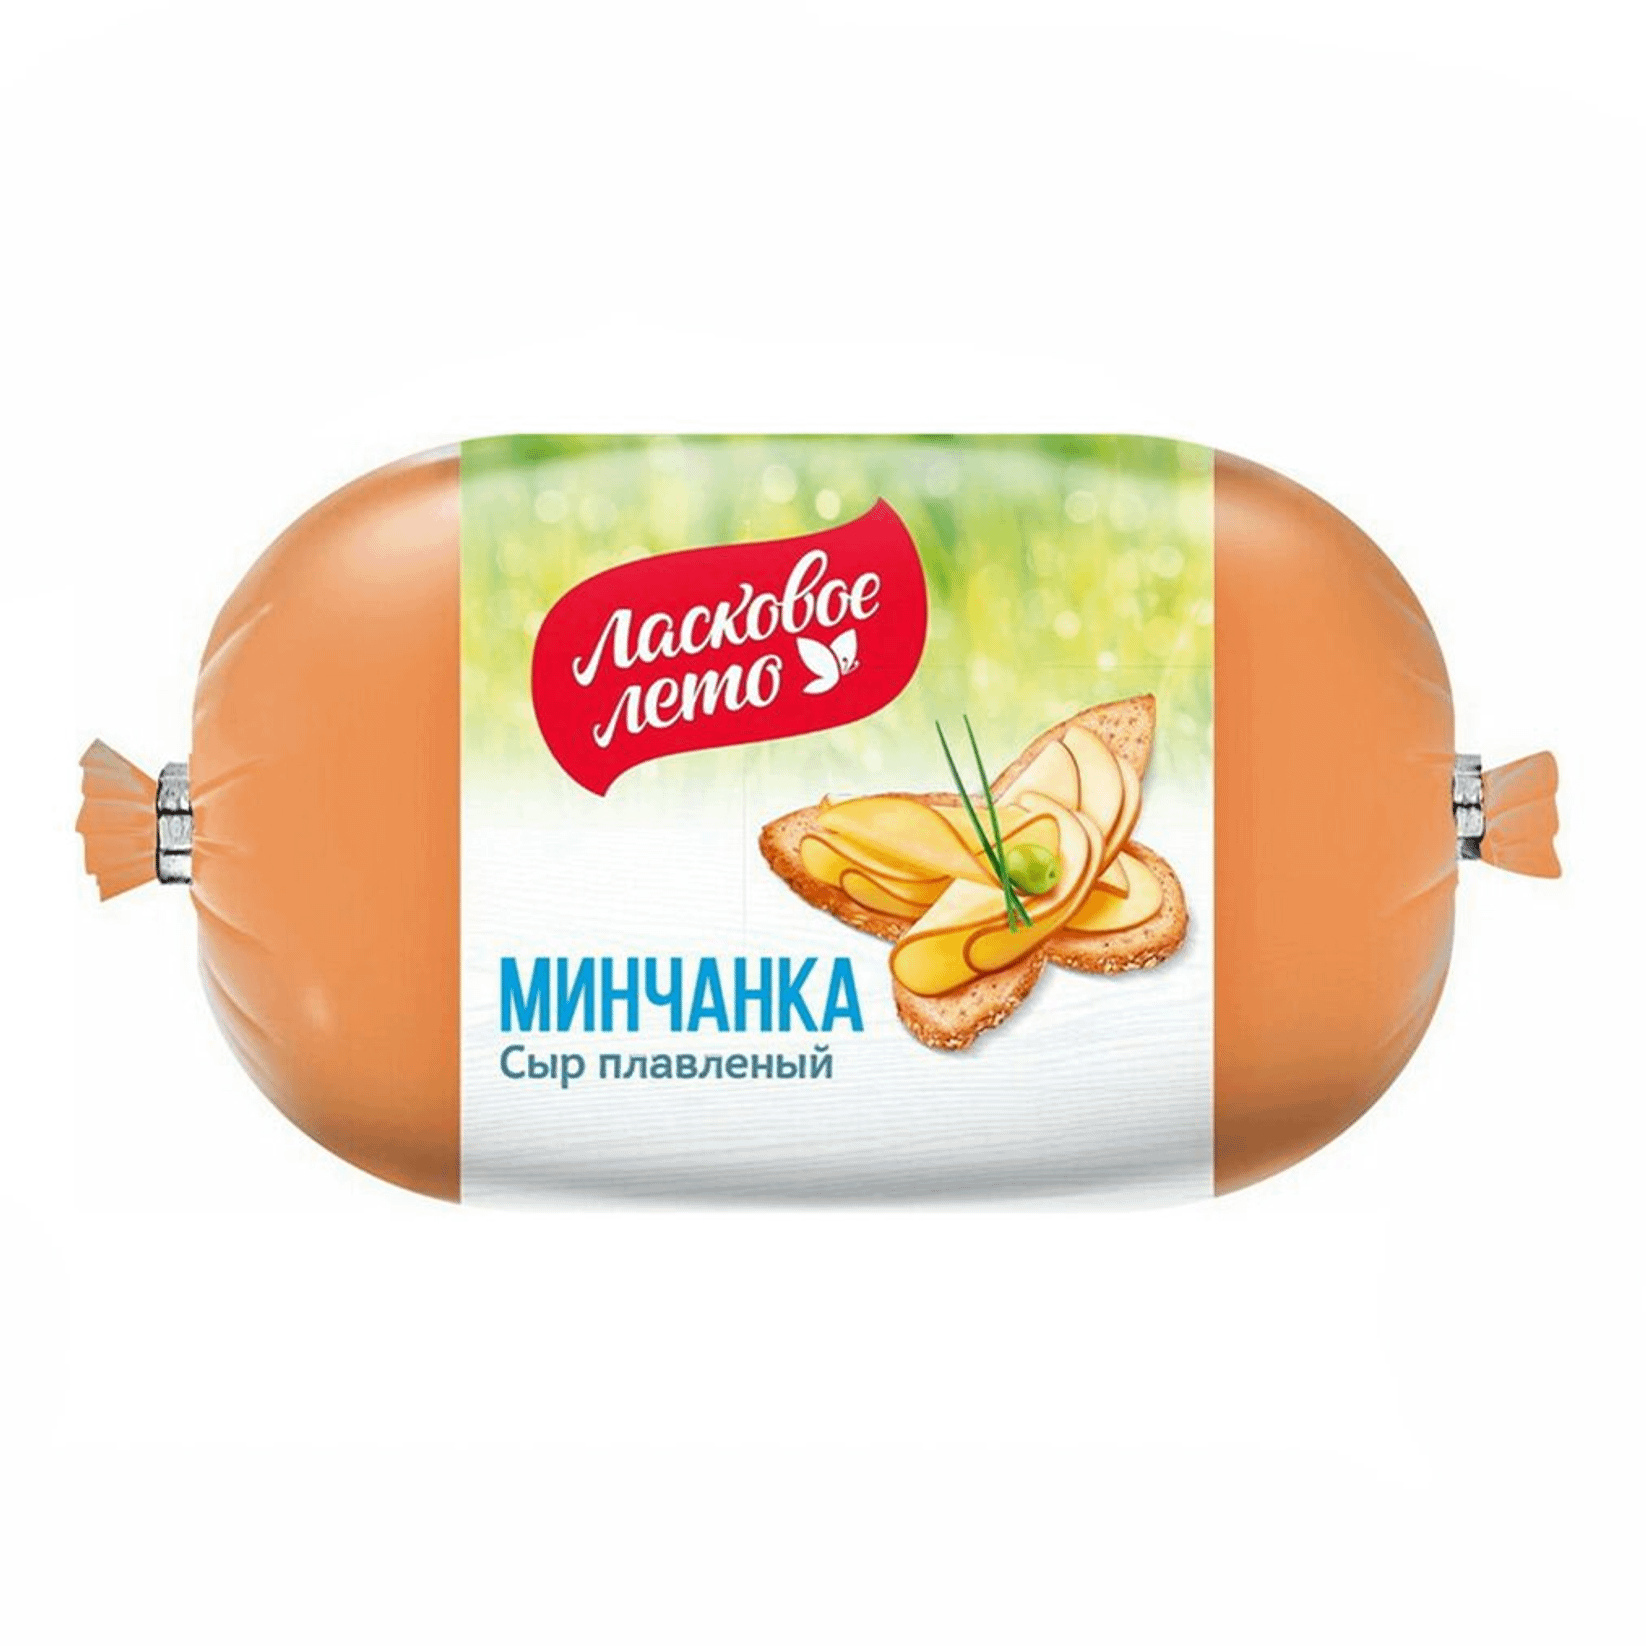 Сыр плавленый Ласковое лето Минчанка колбасный копченый 40%